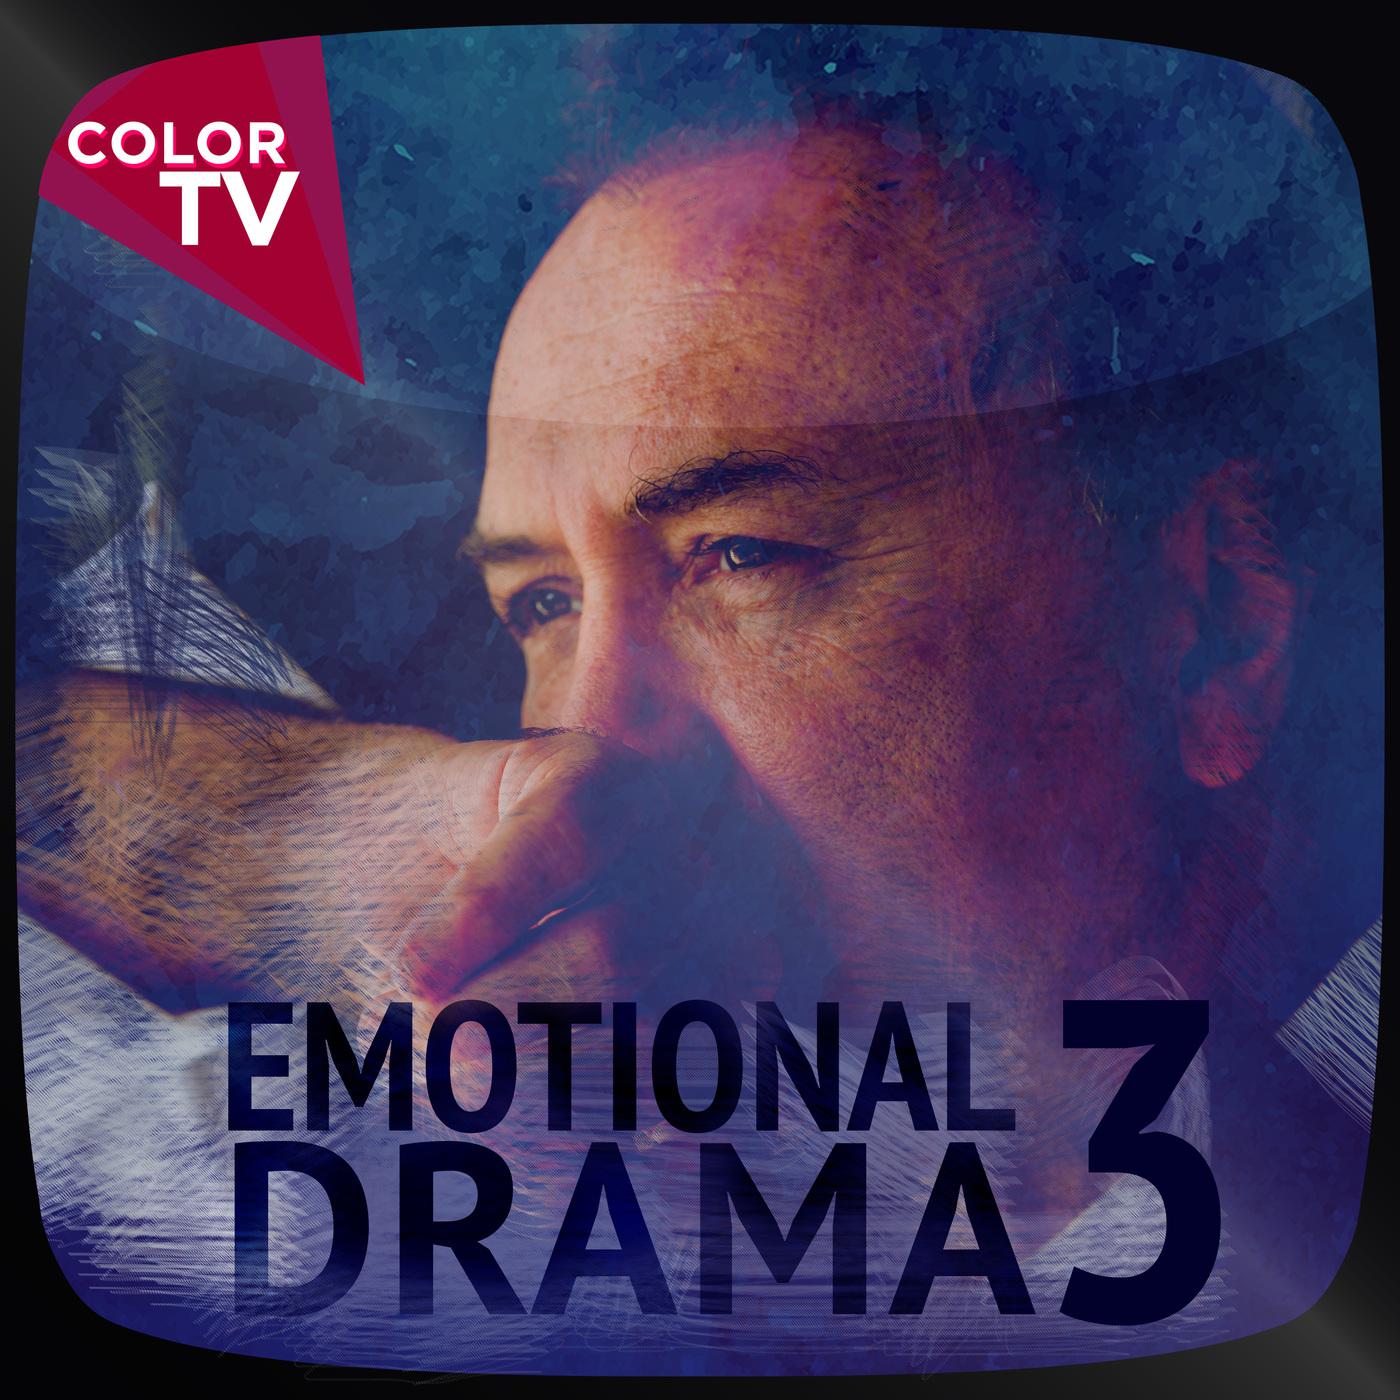 Emotional Drama, Vol. 3